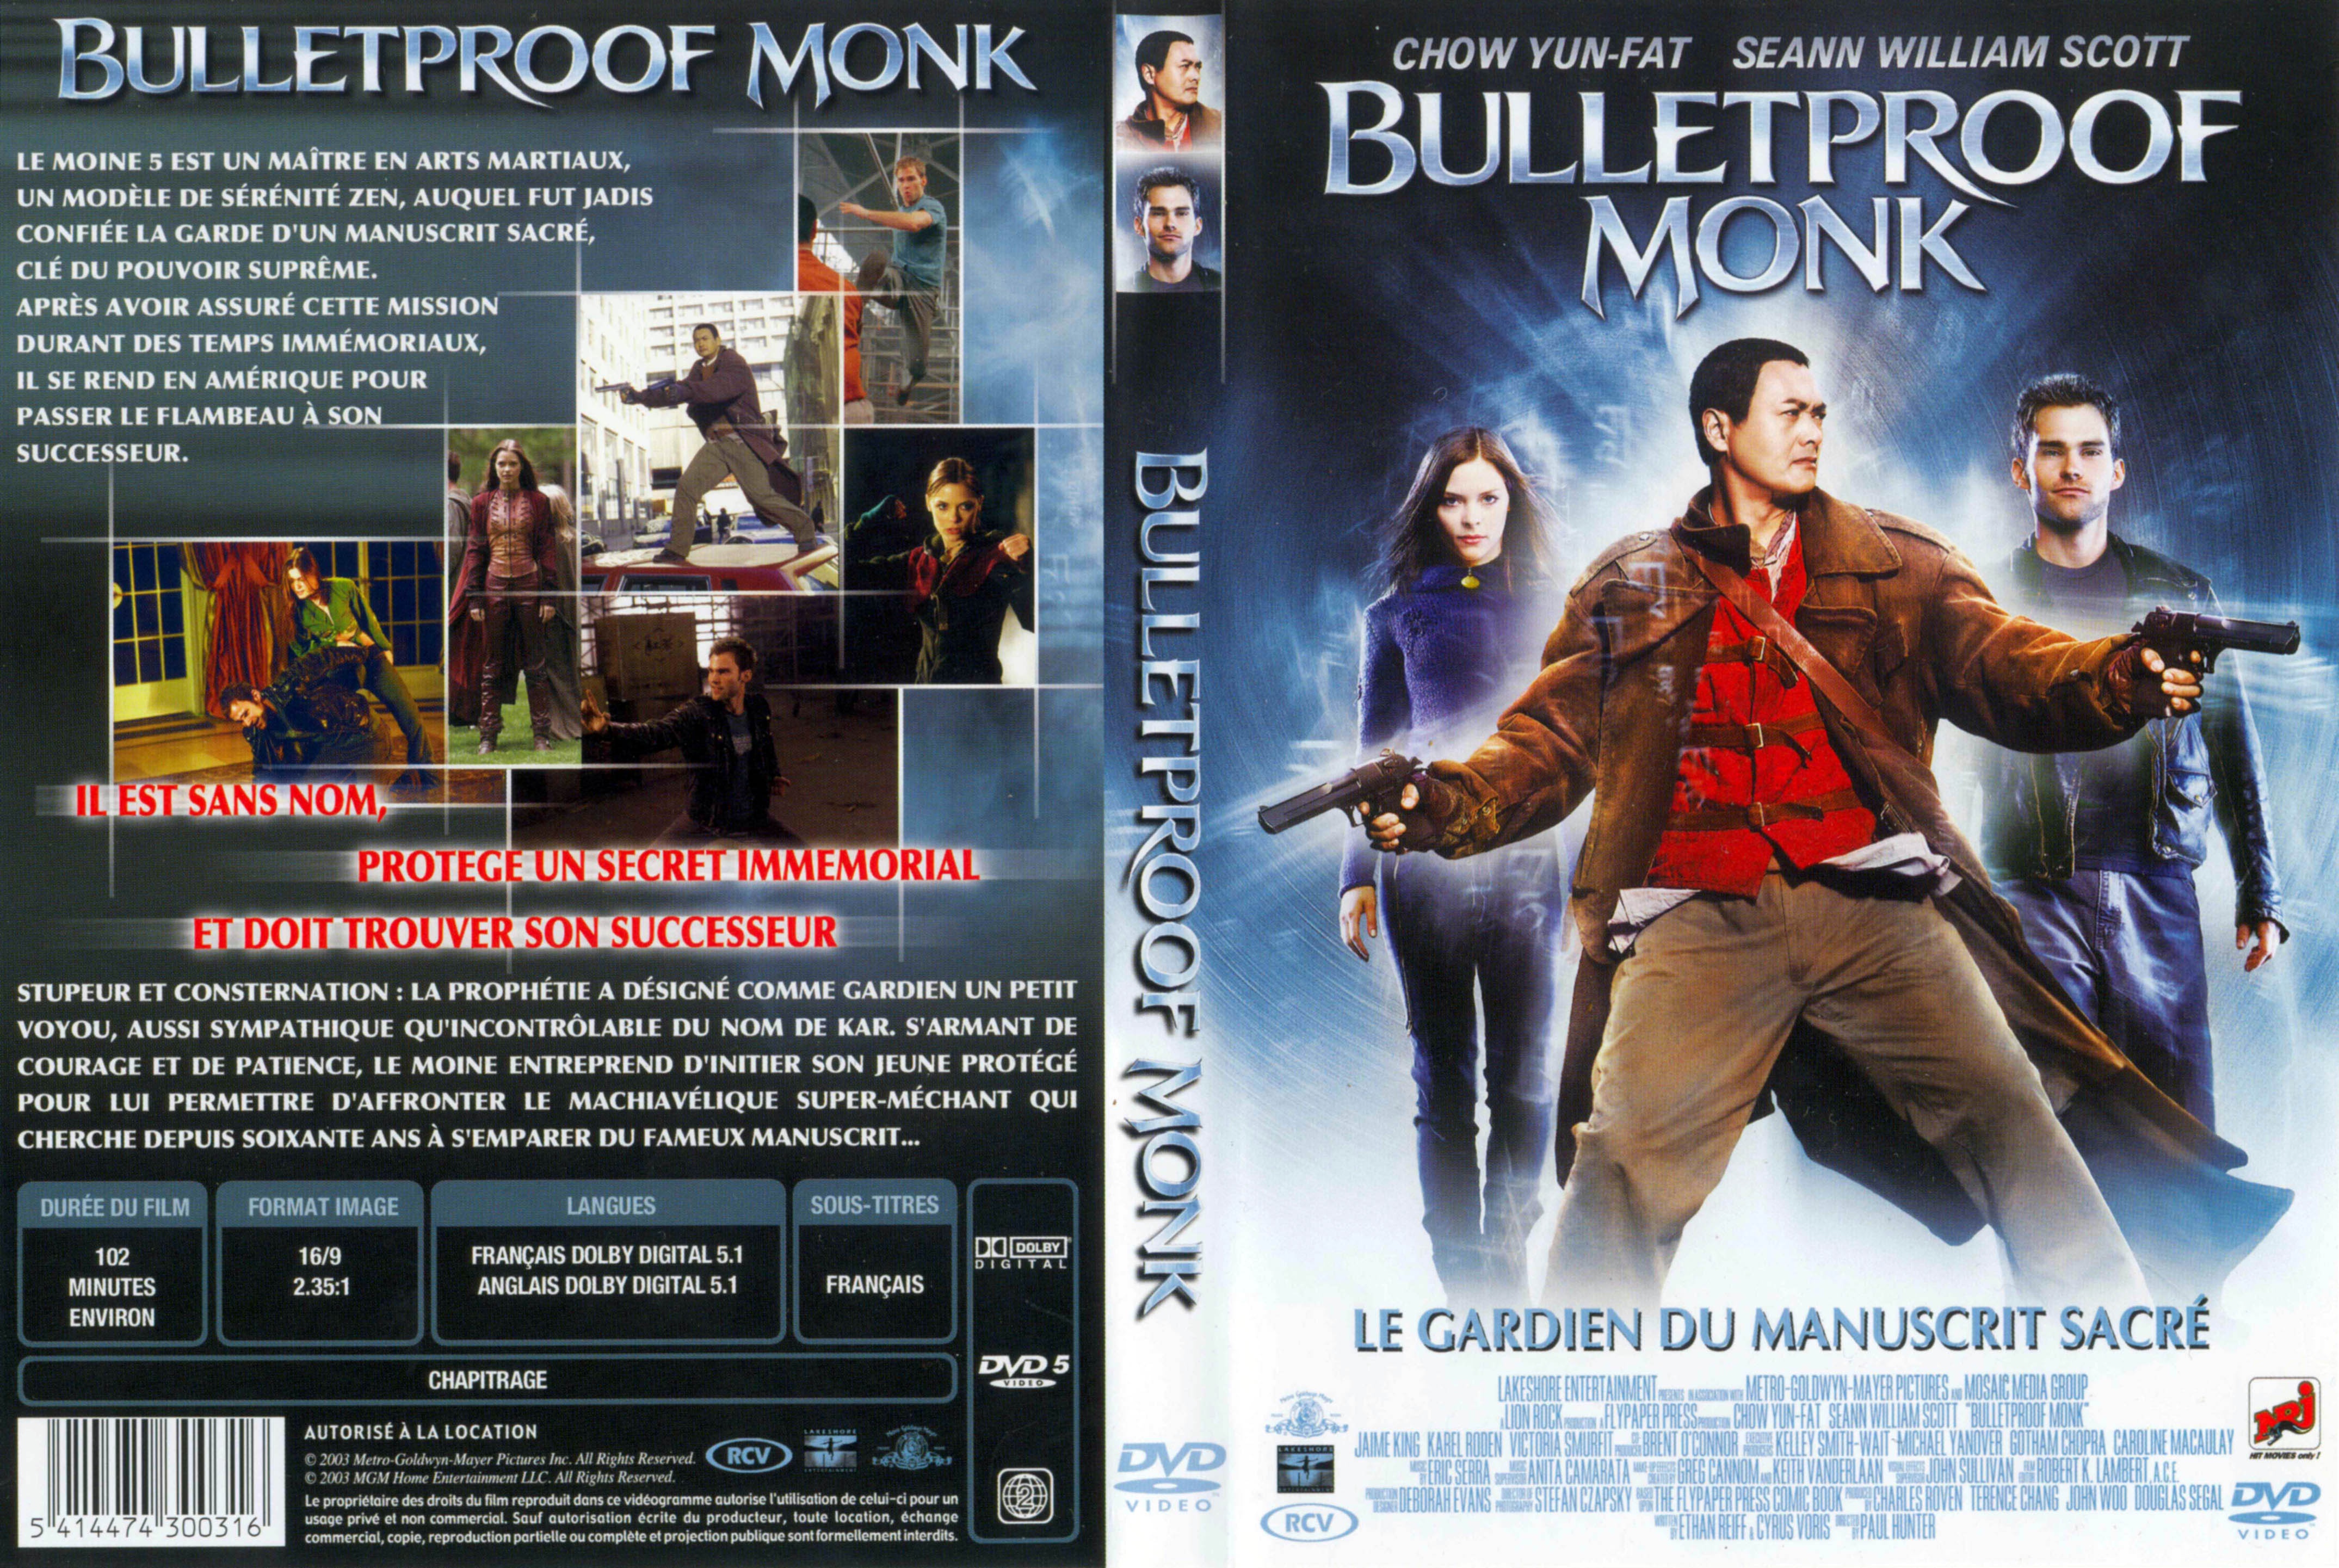 Jaquette DVD Bulletproof monk v2